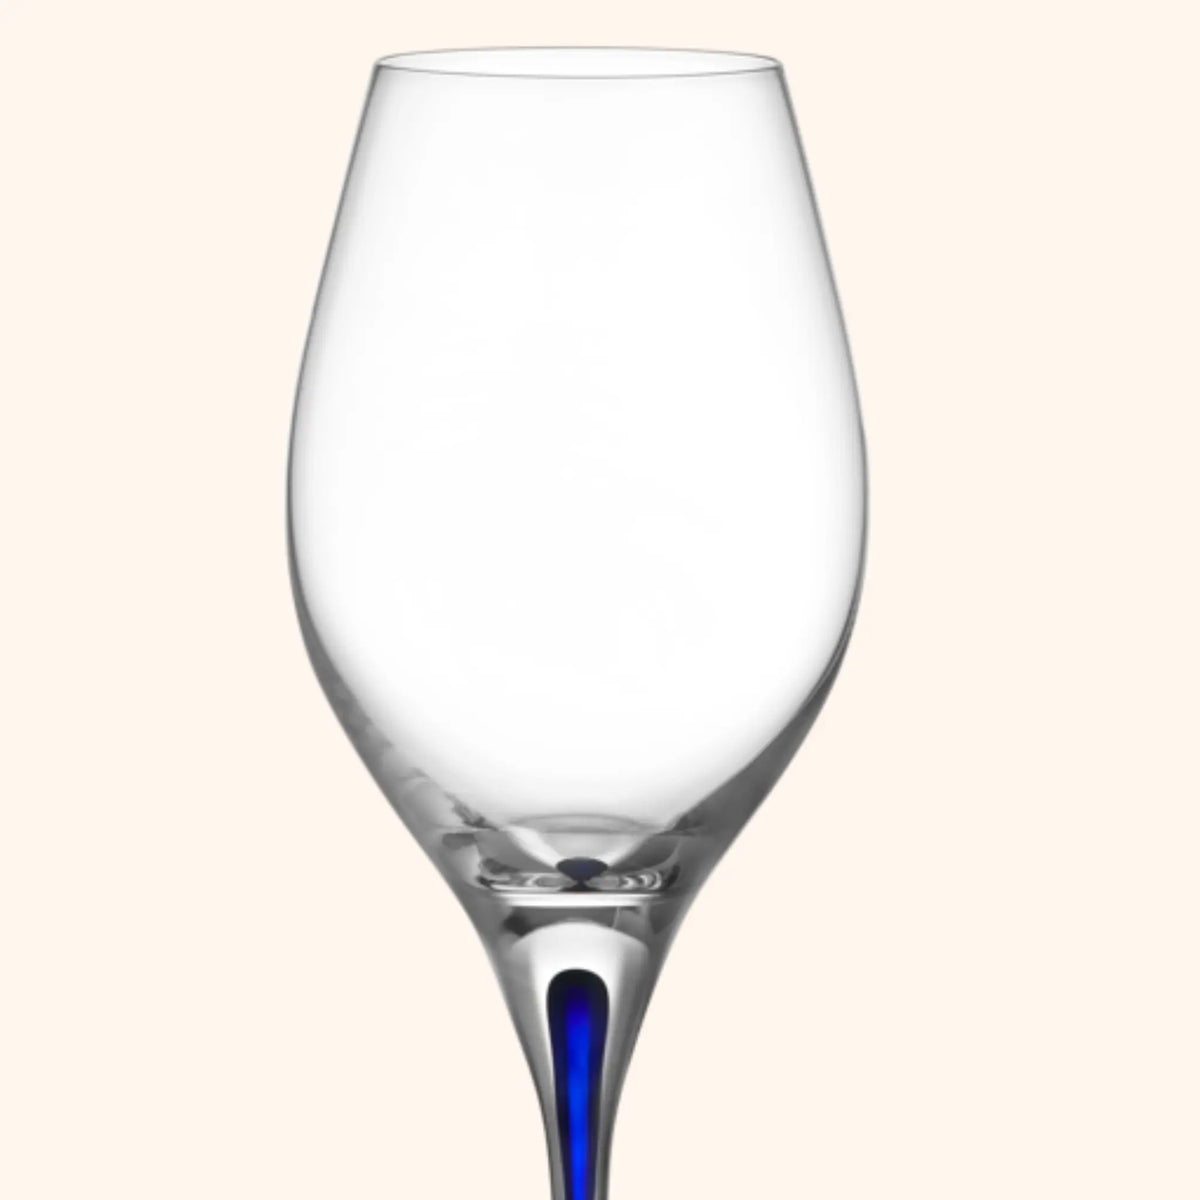 Orrefors | Intermezzo Blue Wine Set of 2 Orrefors